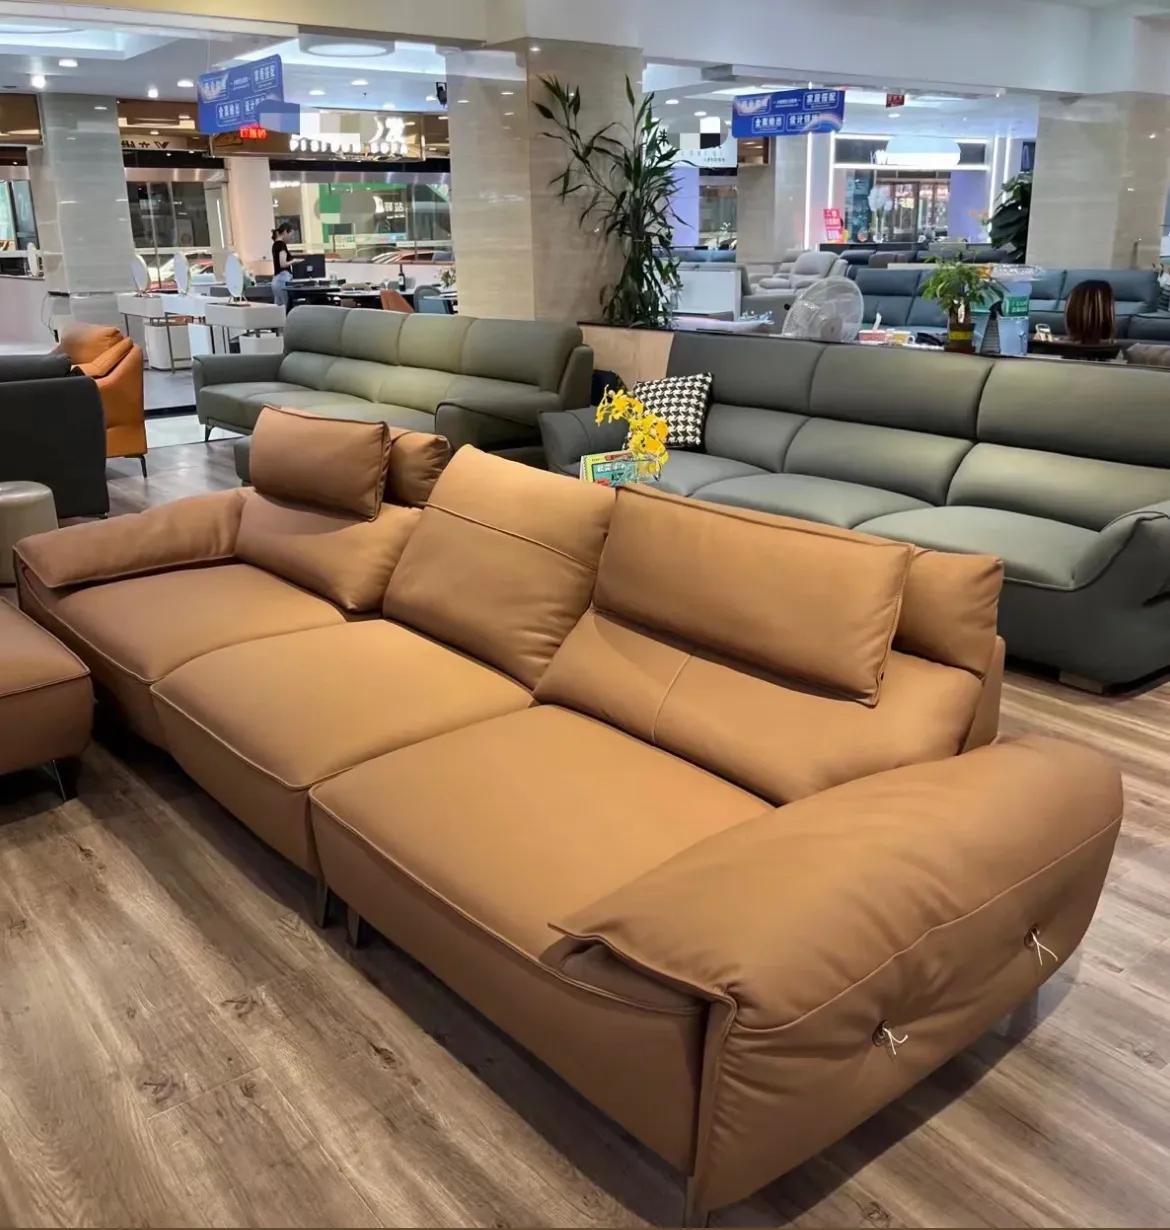 沙发对于一个家庭来说真的太重要了，它的款式决定着客厅的颜值以及主人的品位，它的舒适度也决定了我们今后在客厅待的时长。然而，随着市面上的沙发款式越来越多，消费者却陷